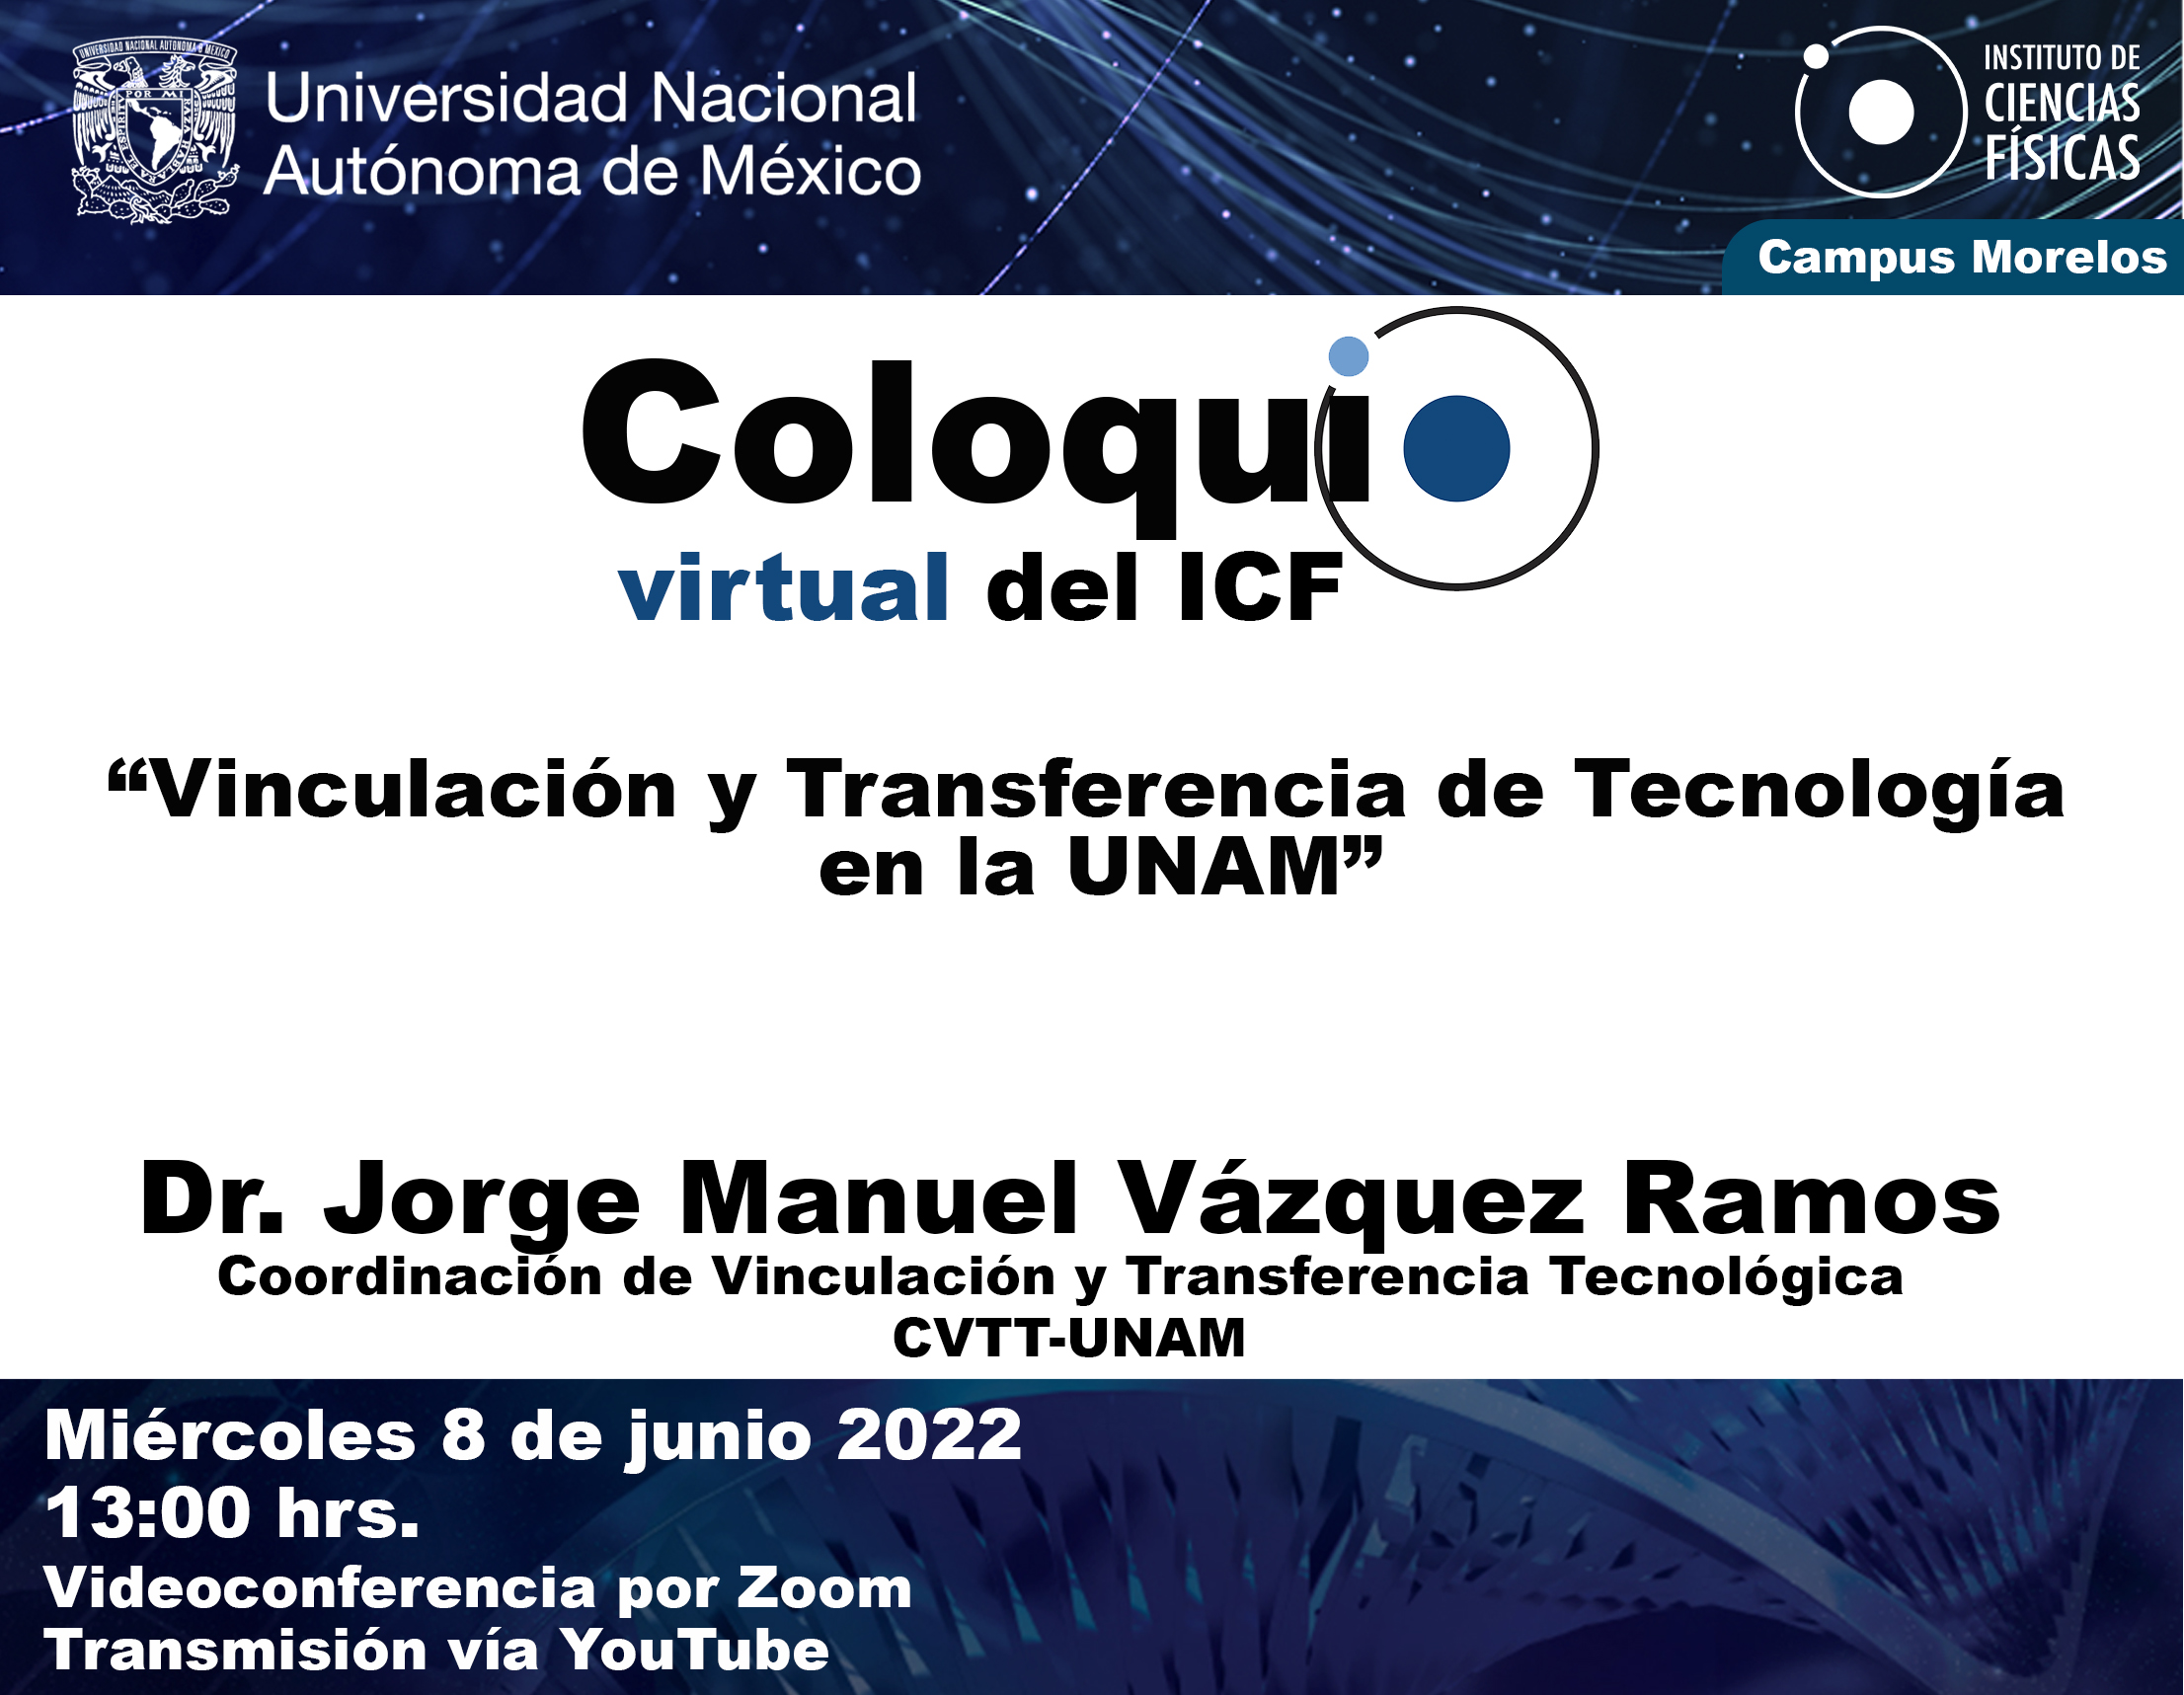 “Vinculación y Transferencia de Tecnología en la UNAM”